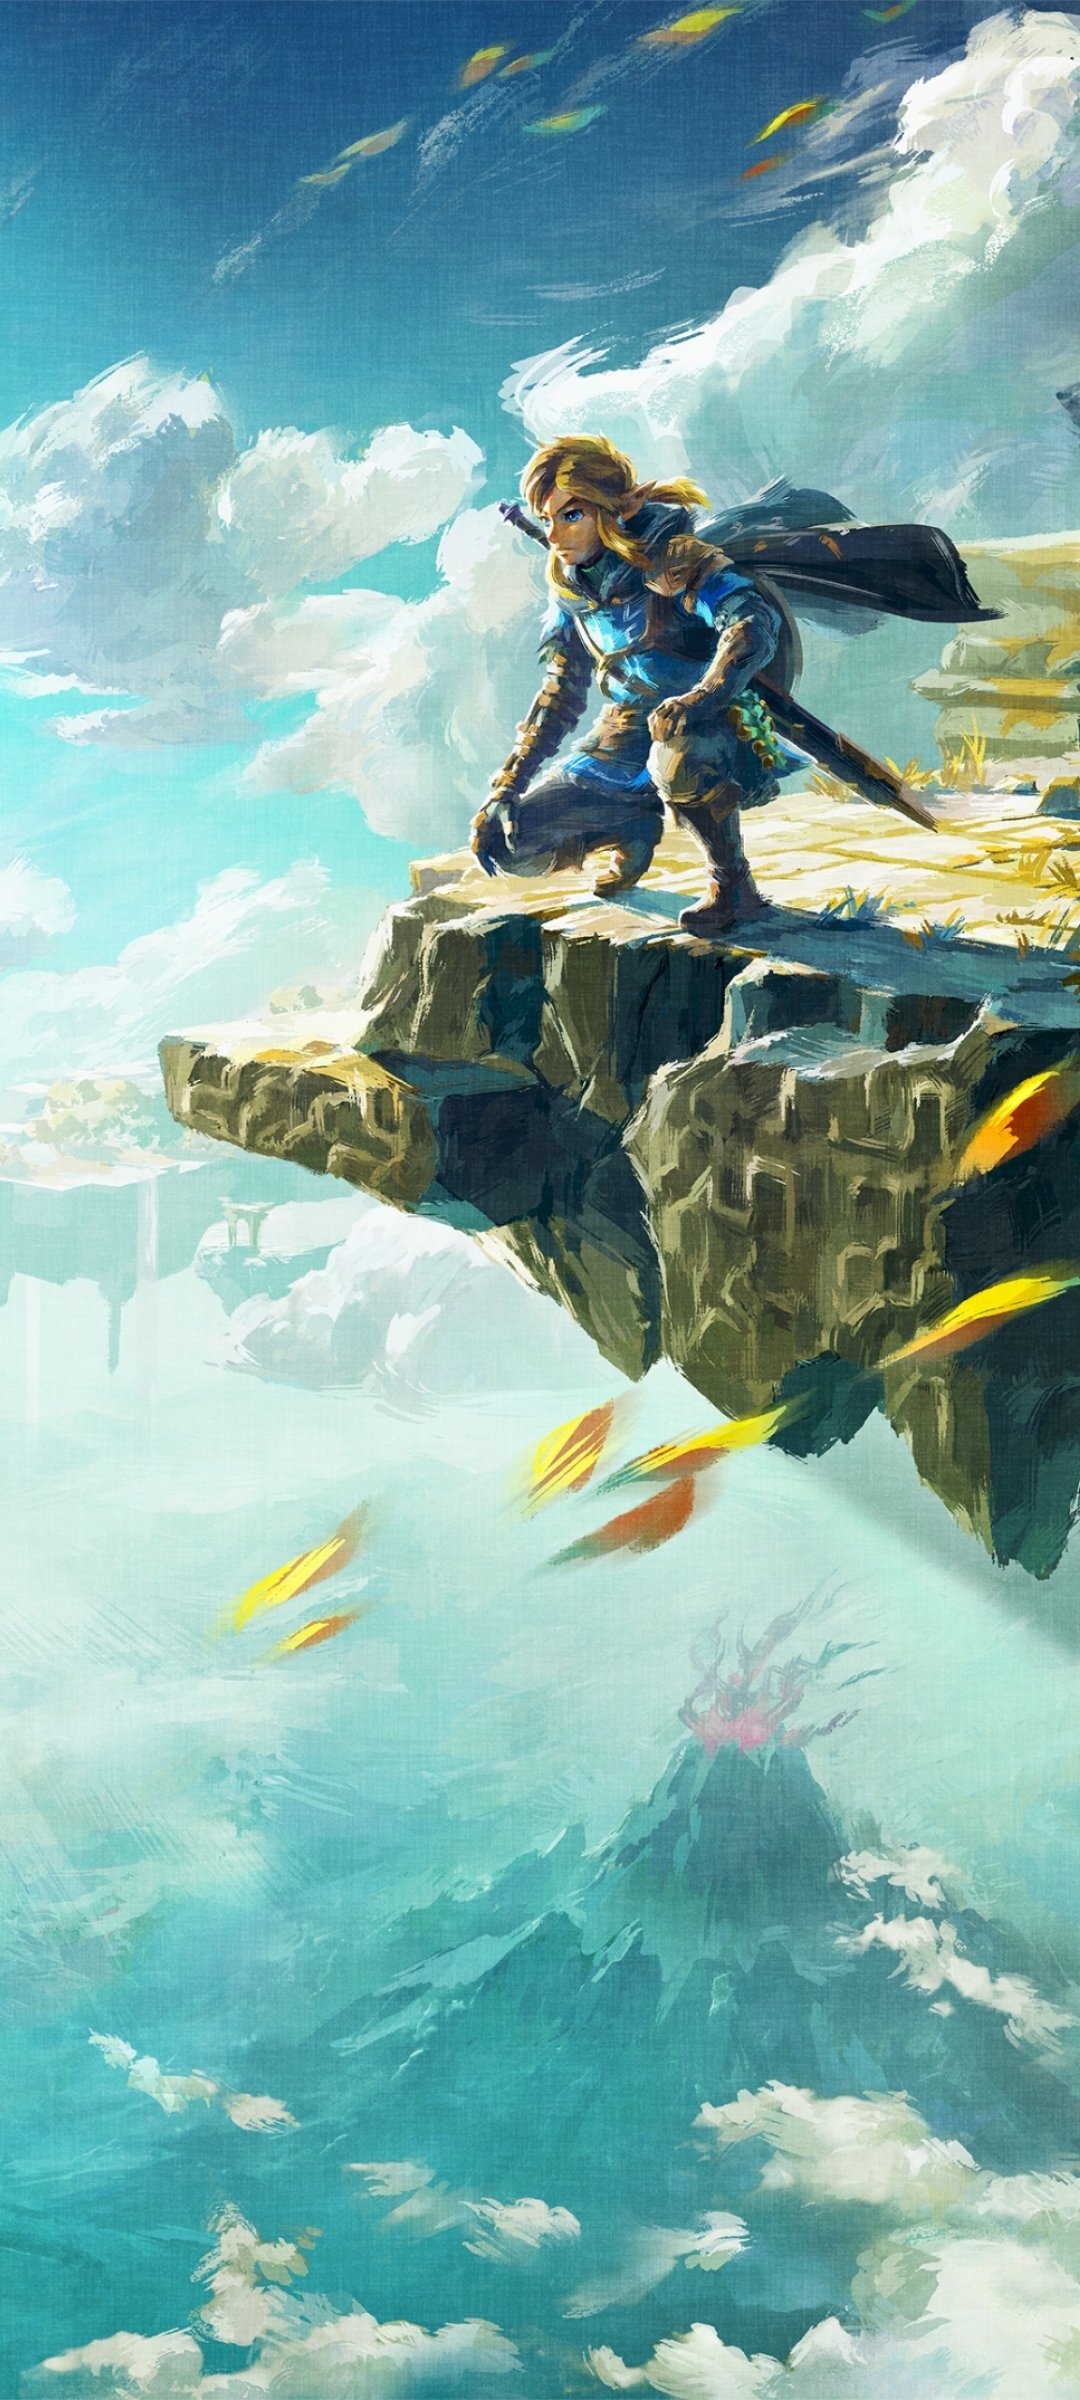 100+] The Legend Of Zelda Iphone Wallpapers | Wallpapers.com